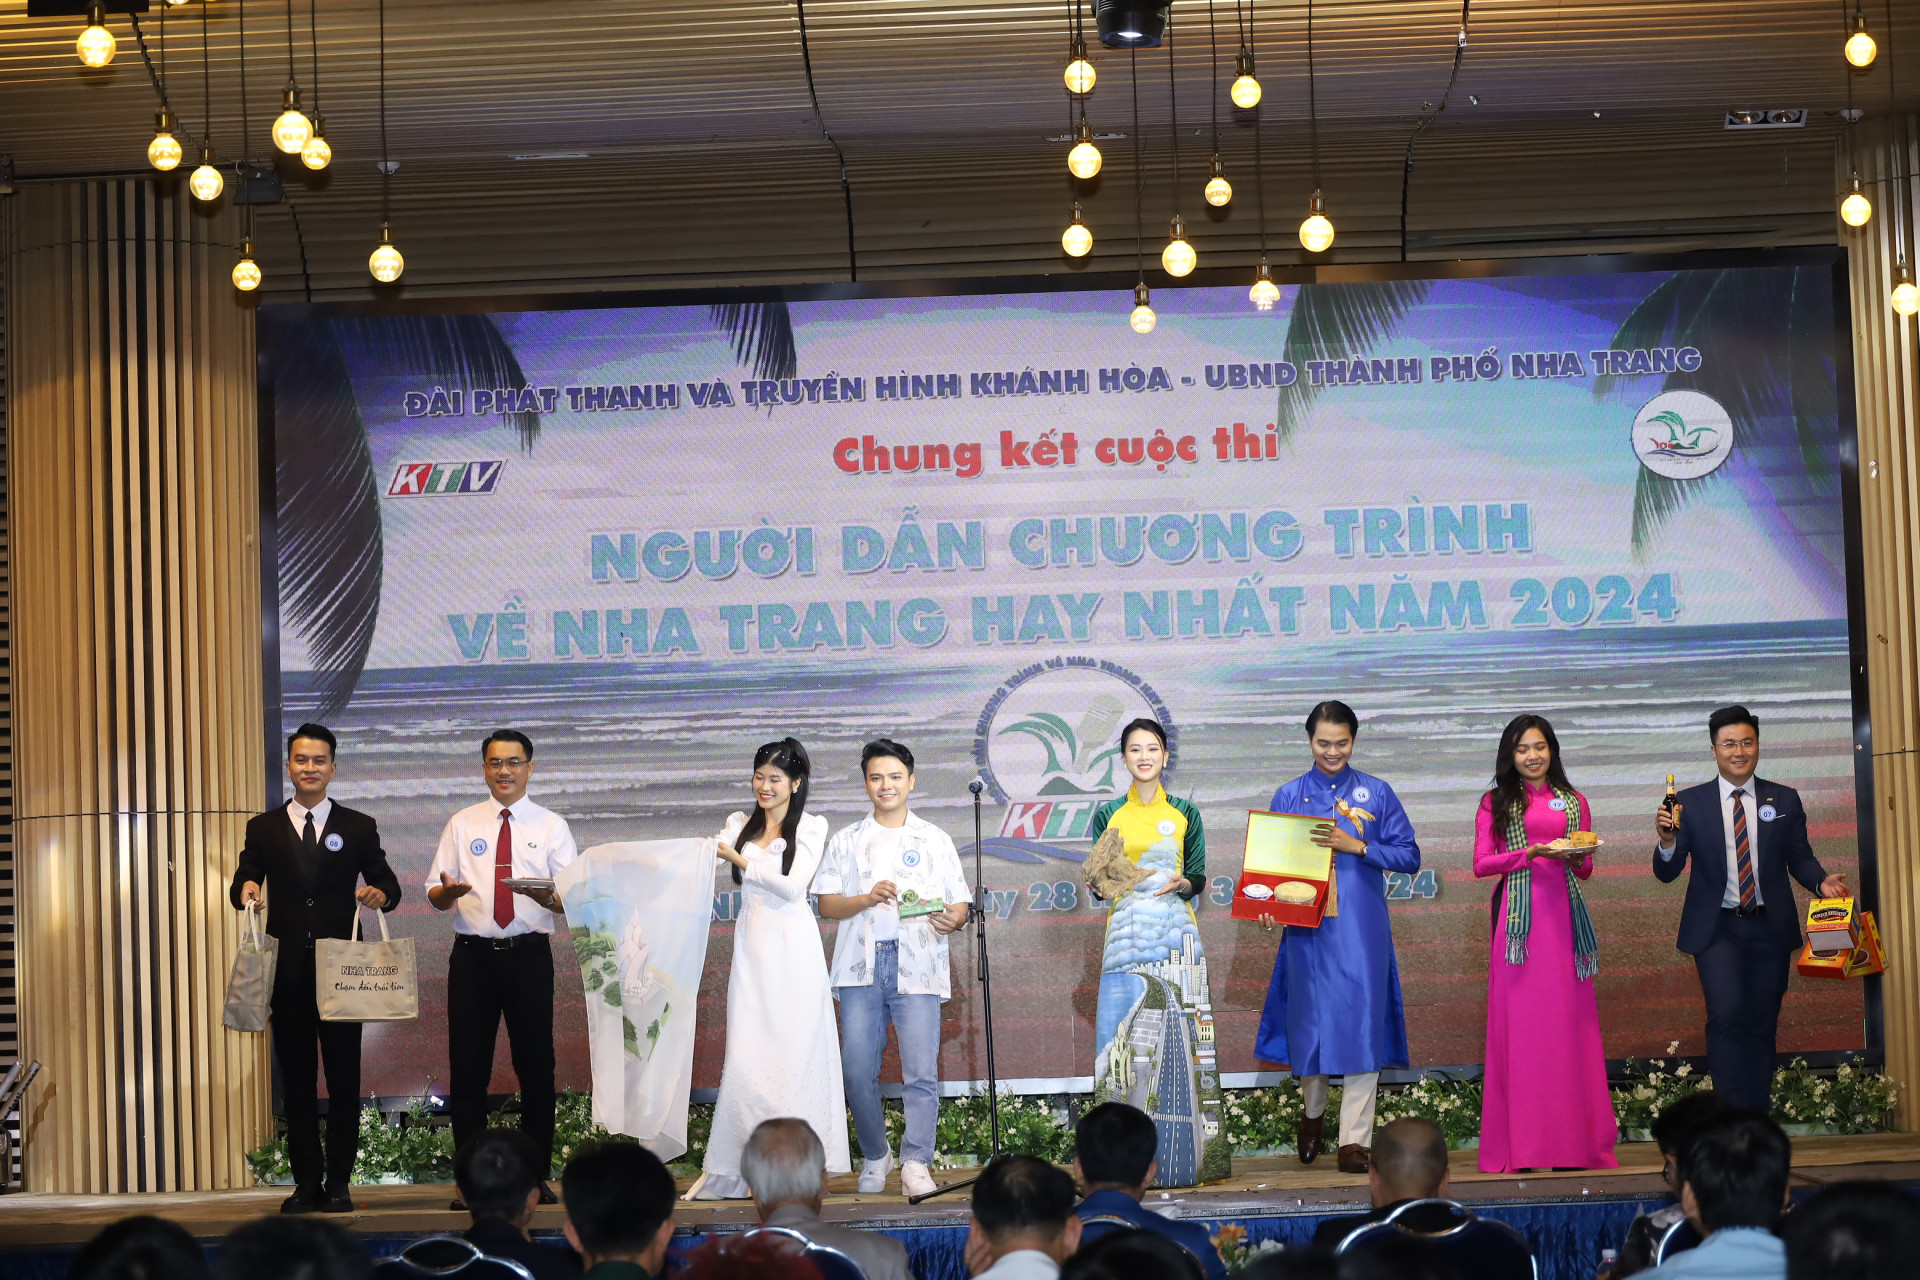 Các thí sinh trong đêm thi chung kết với phần giới thiệu sản vật đặc trưng của Nha Trang.